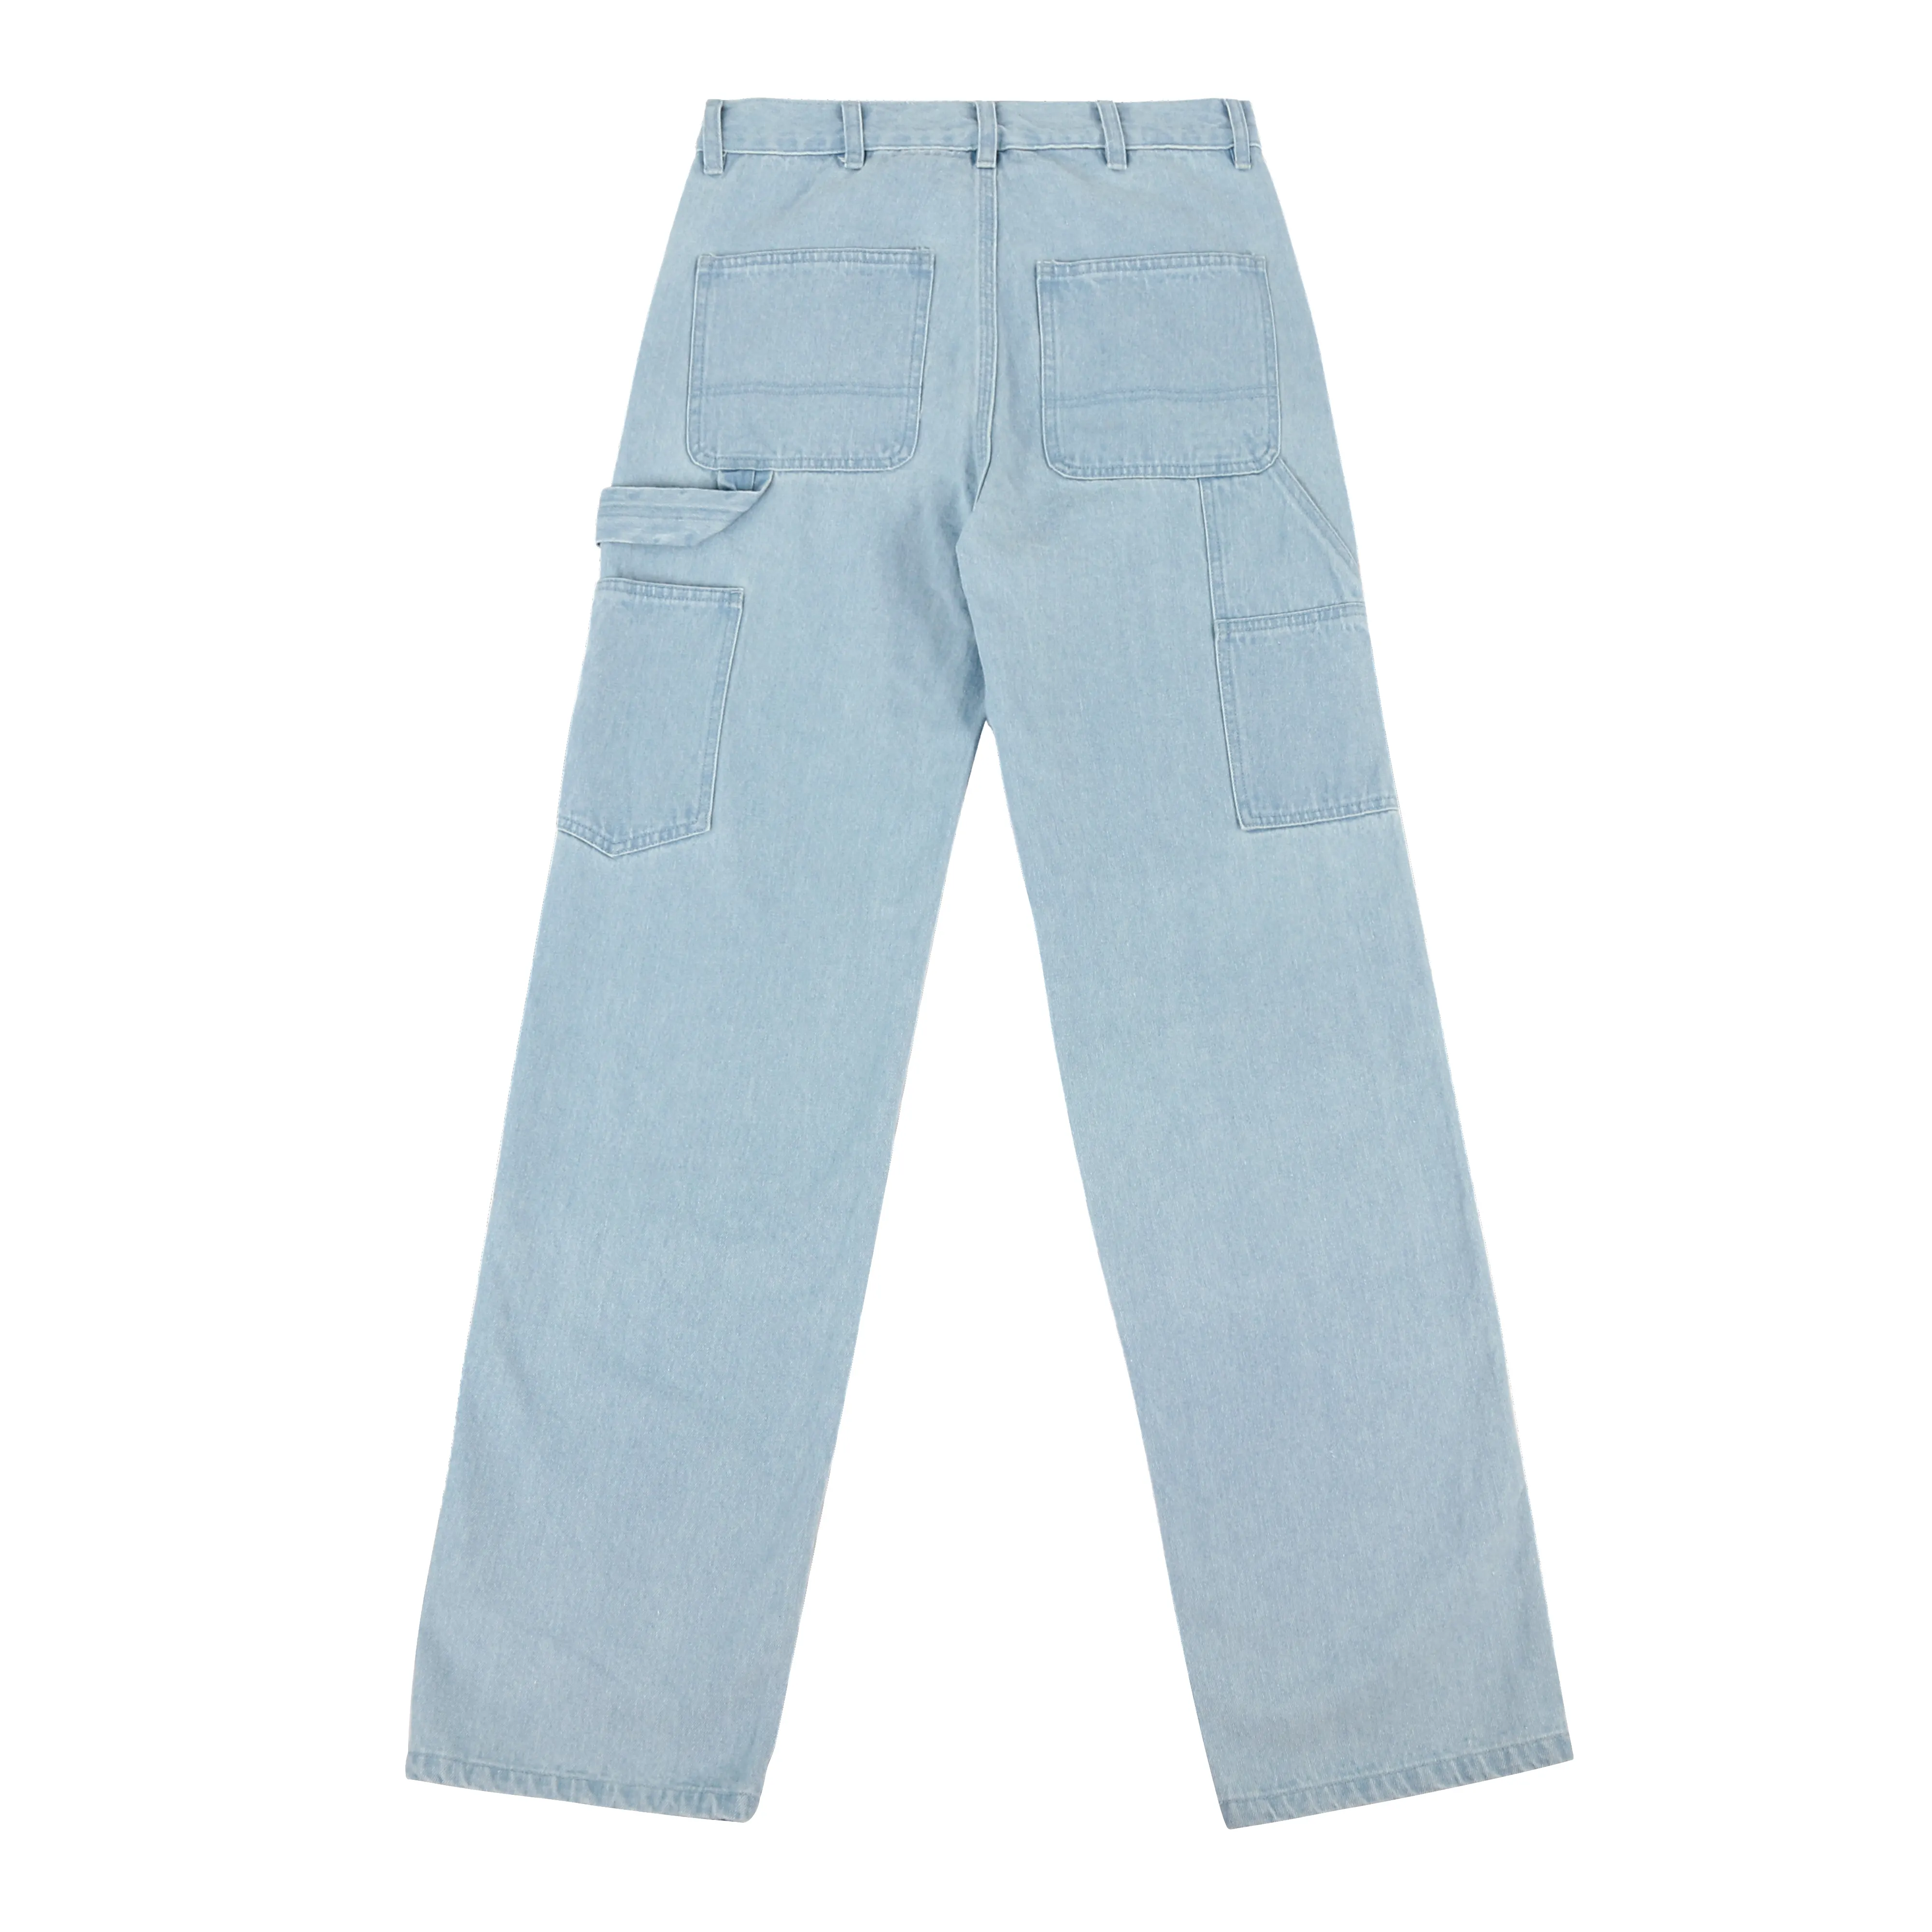 Men's double knee custom pants carpenter denim painter pant trending cargo jeans for men cargo pants jeans for men